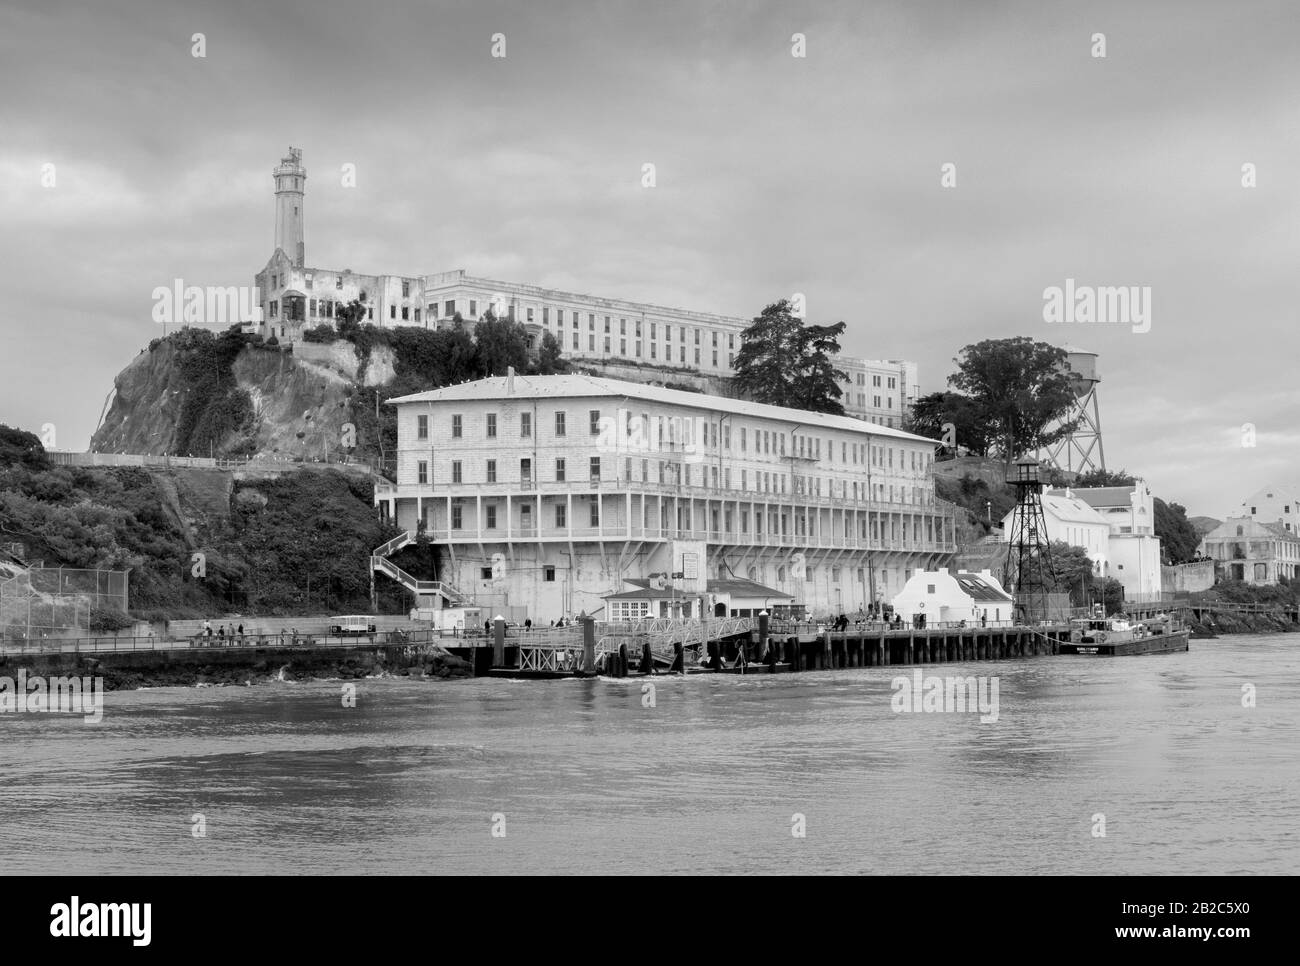 Le Pénitencier Fédéral D'Alcatraz Sur L'Île D'Alcatraz Dans La Baie De San Francisco, Californie, États-Unis. La prison a une fois emprisonné le gangster américain Al Capone. Banque D'Images